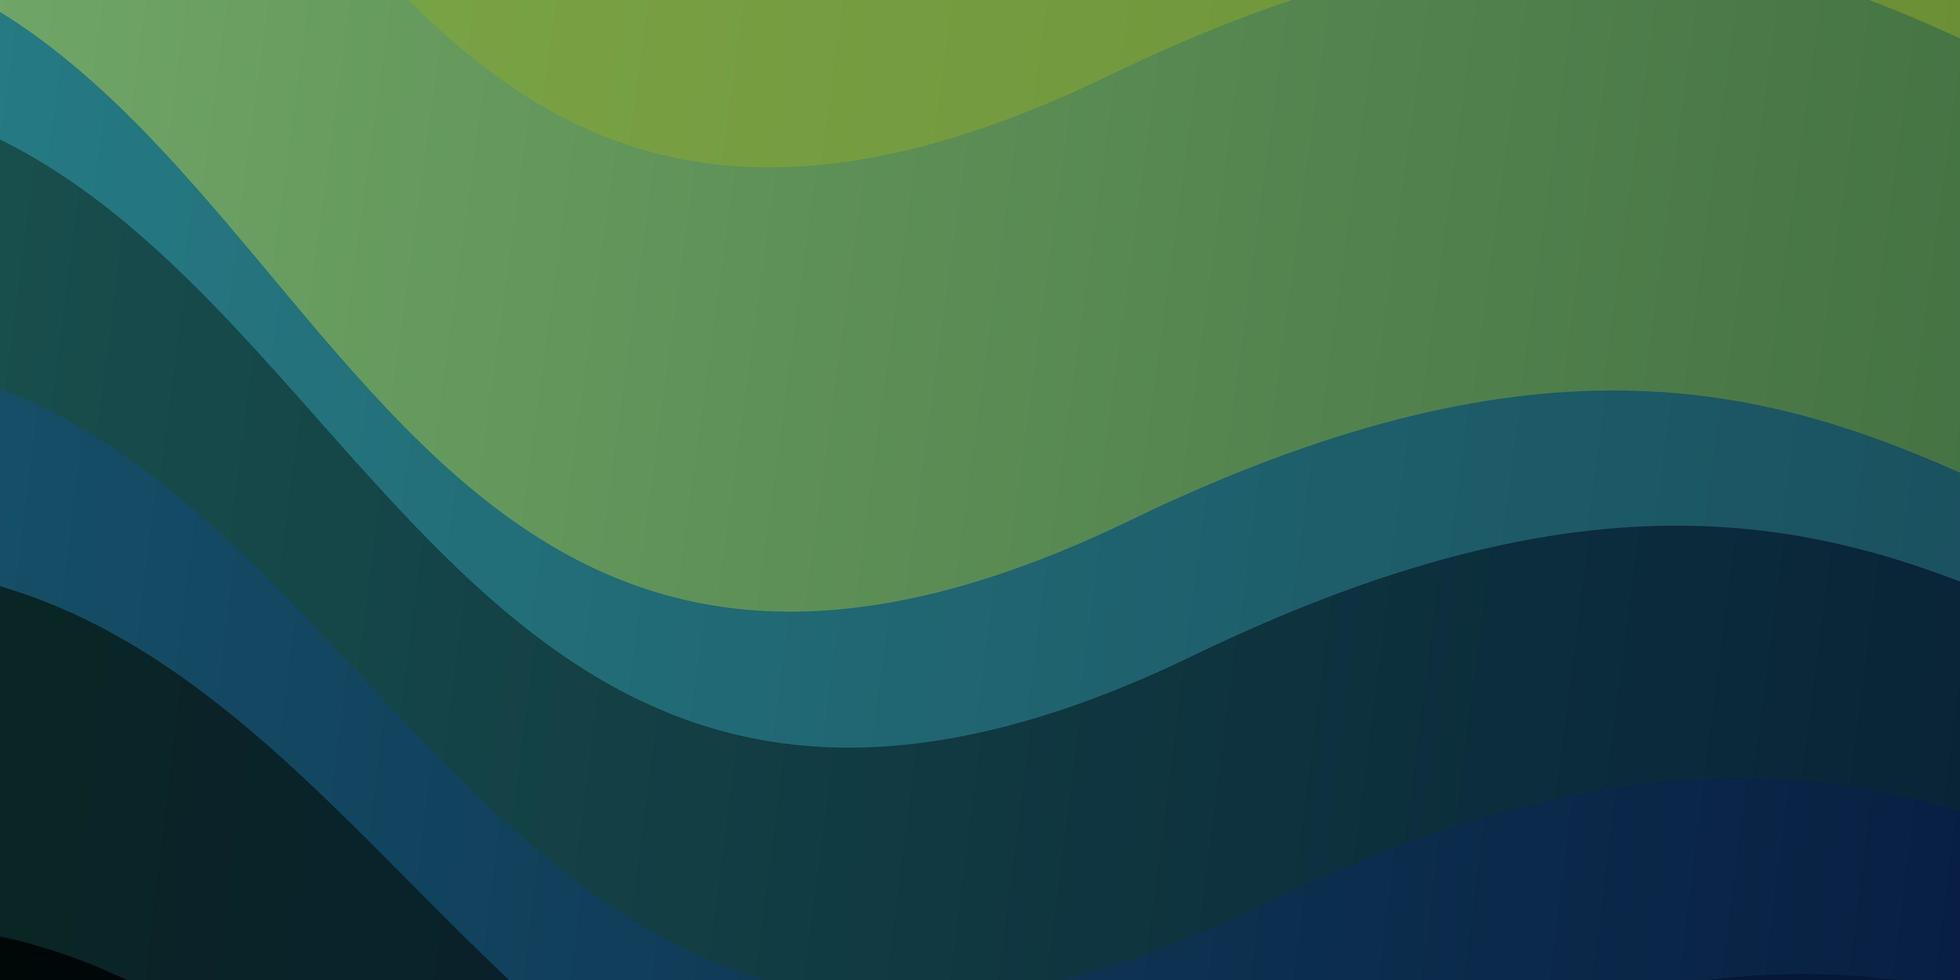 ljusblå, grön vektorbakgrund med böjda linjer. färgstark illustration, som består av kurvor. smart design för dina kampanjer. vektor